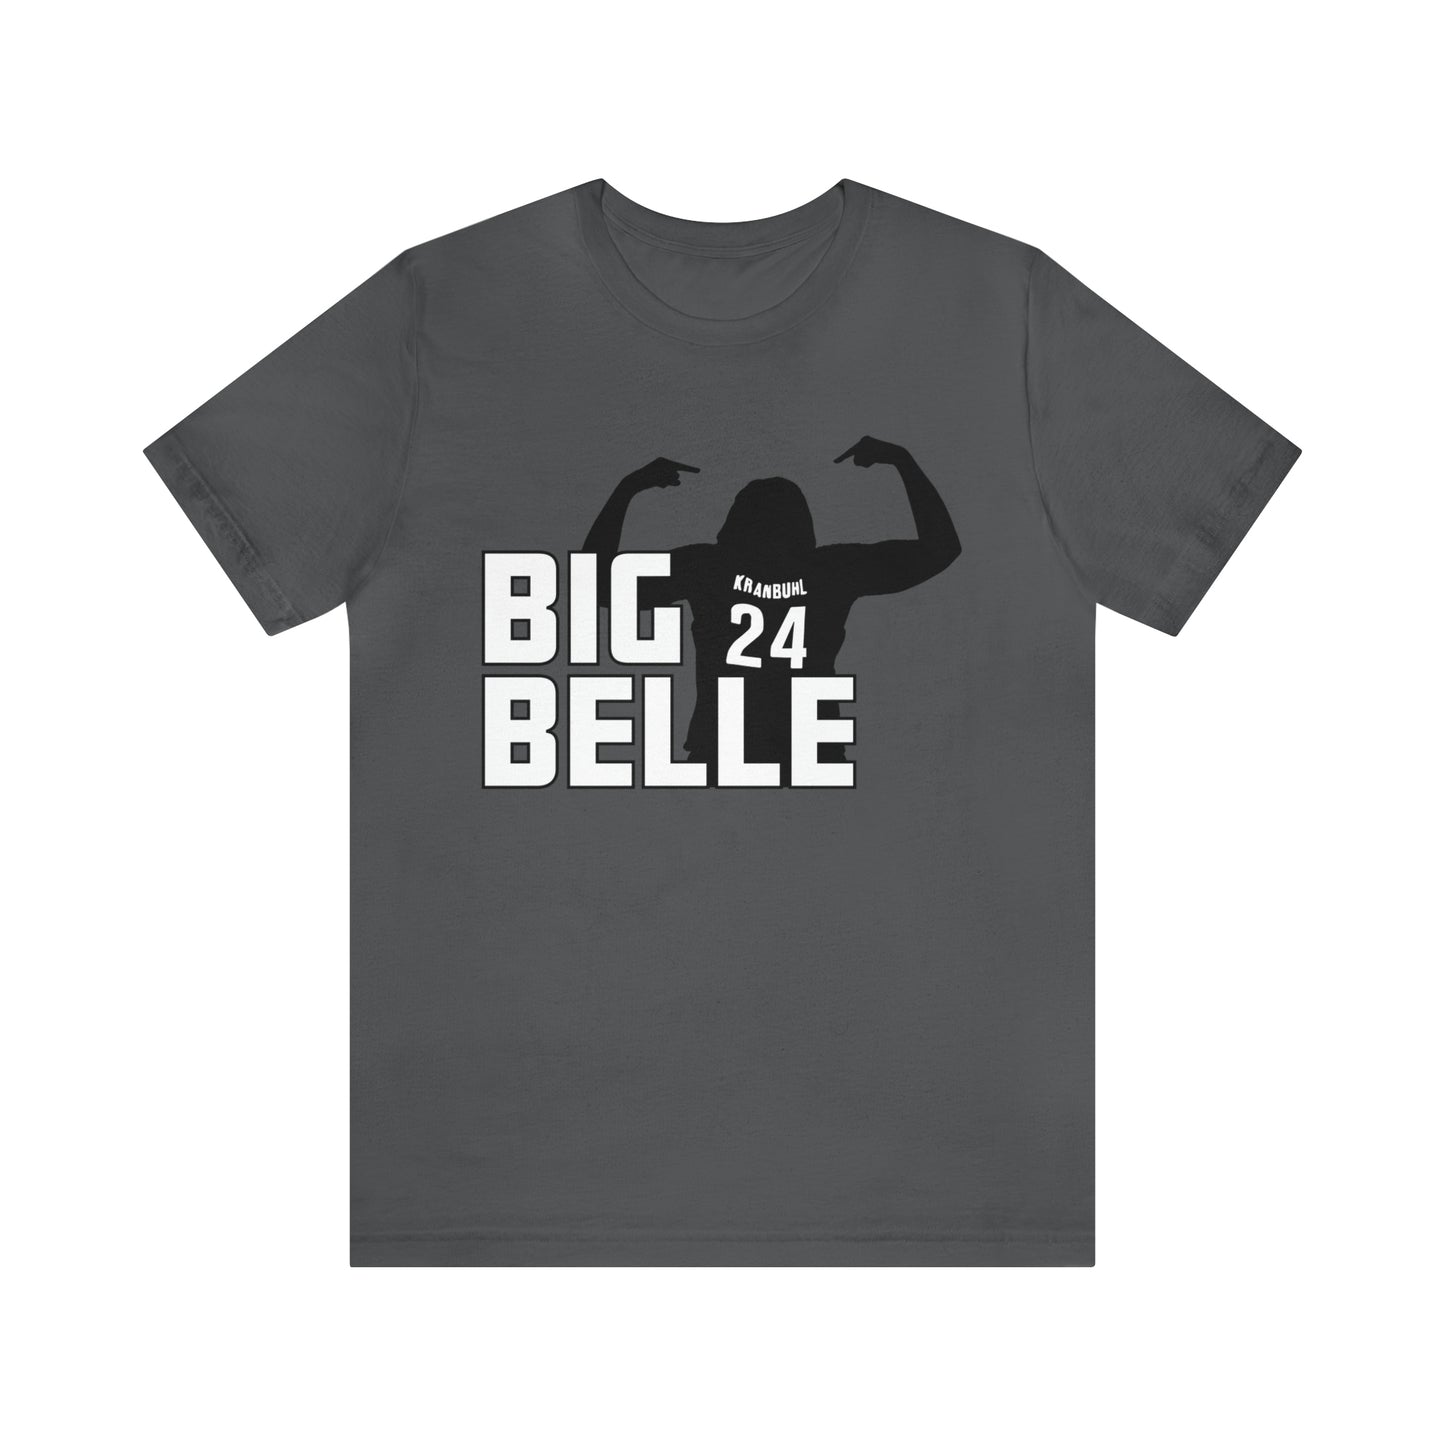 Belle Kranbuhl: Big Belle Tee